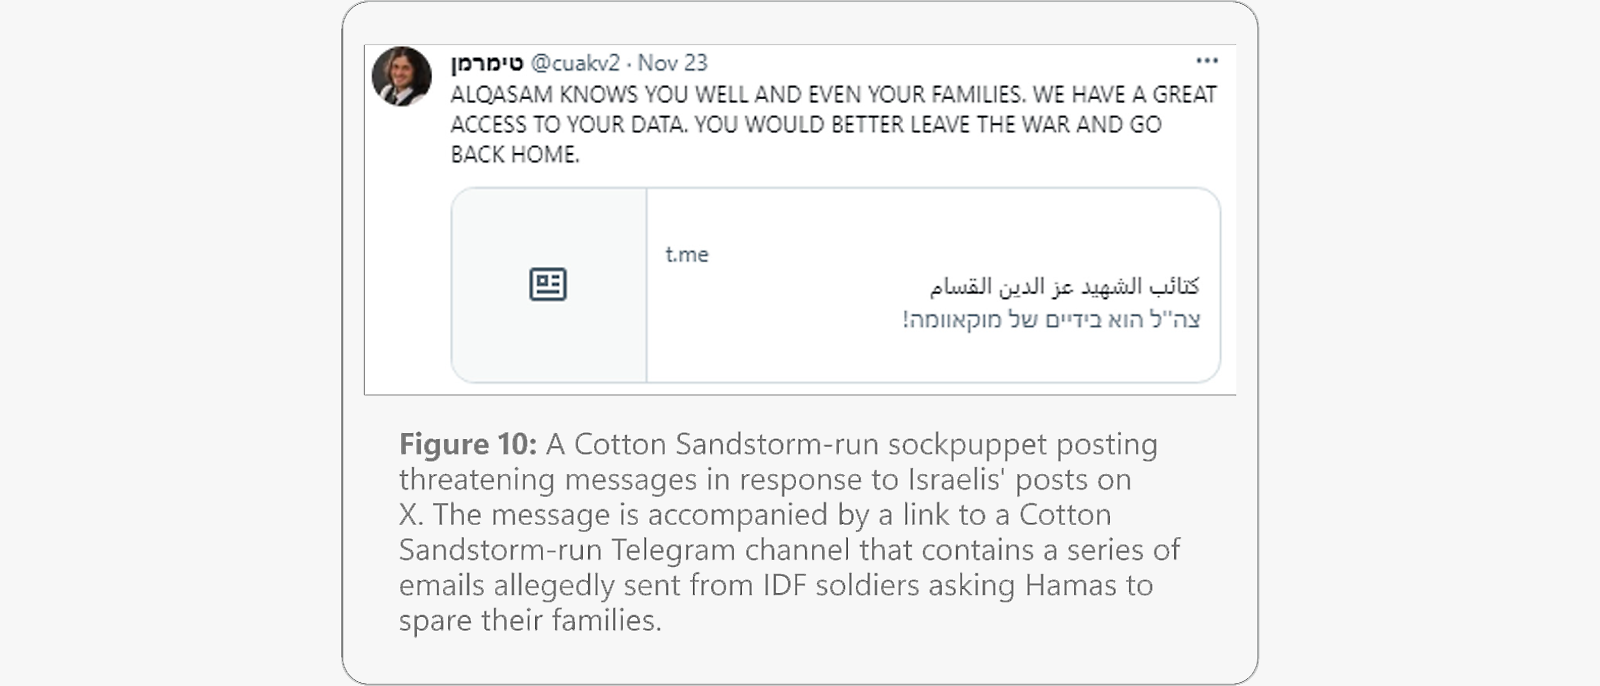 Draudošs ziņojums no iespējamā Cotton Sandstorm vadītā viltus profila, kurā minēta piekļuve personas datiem un mudināts pamest karu.